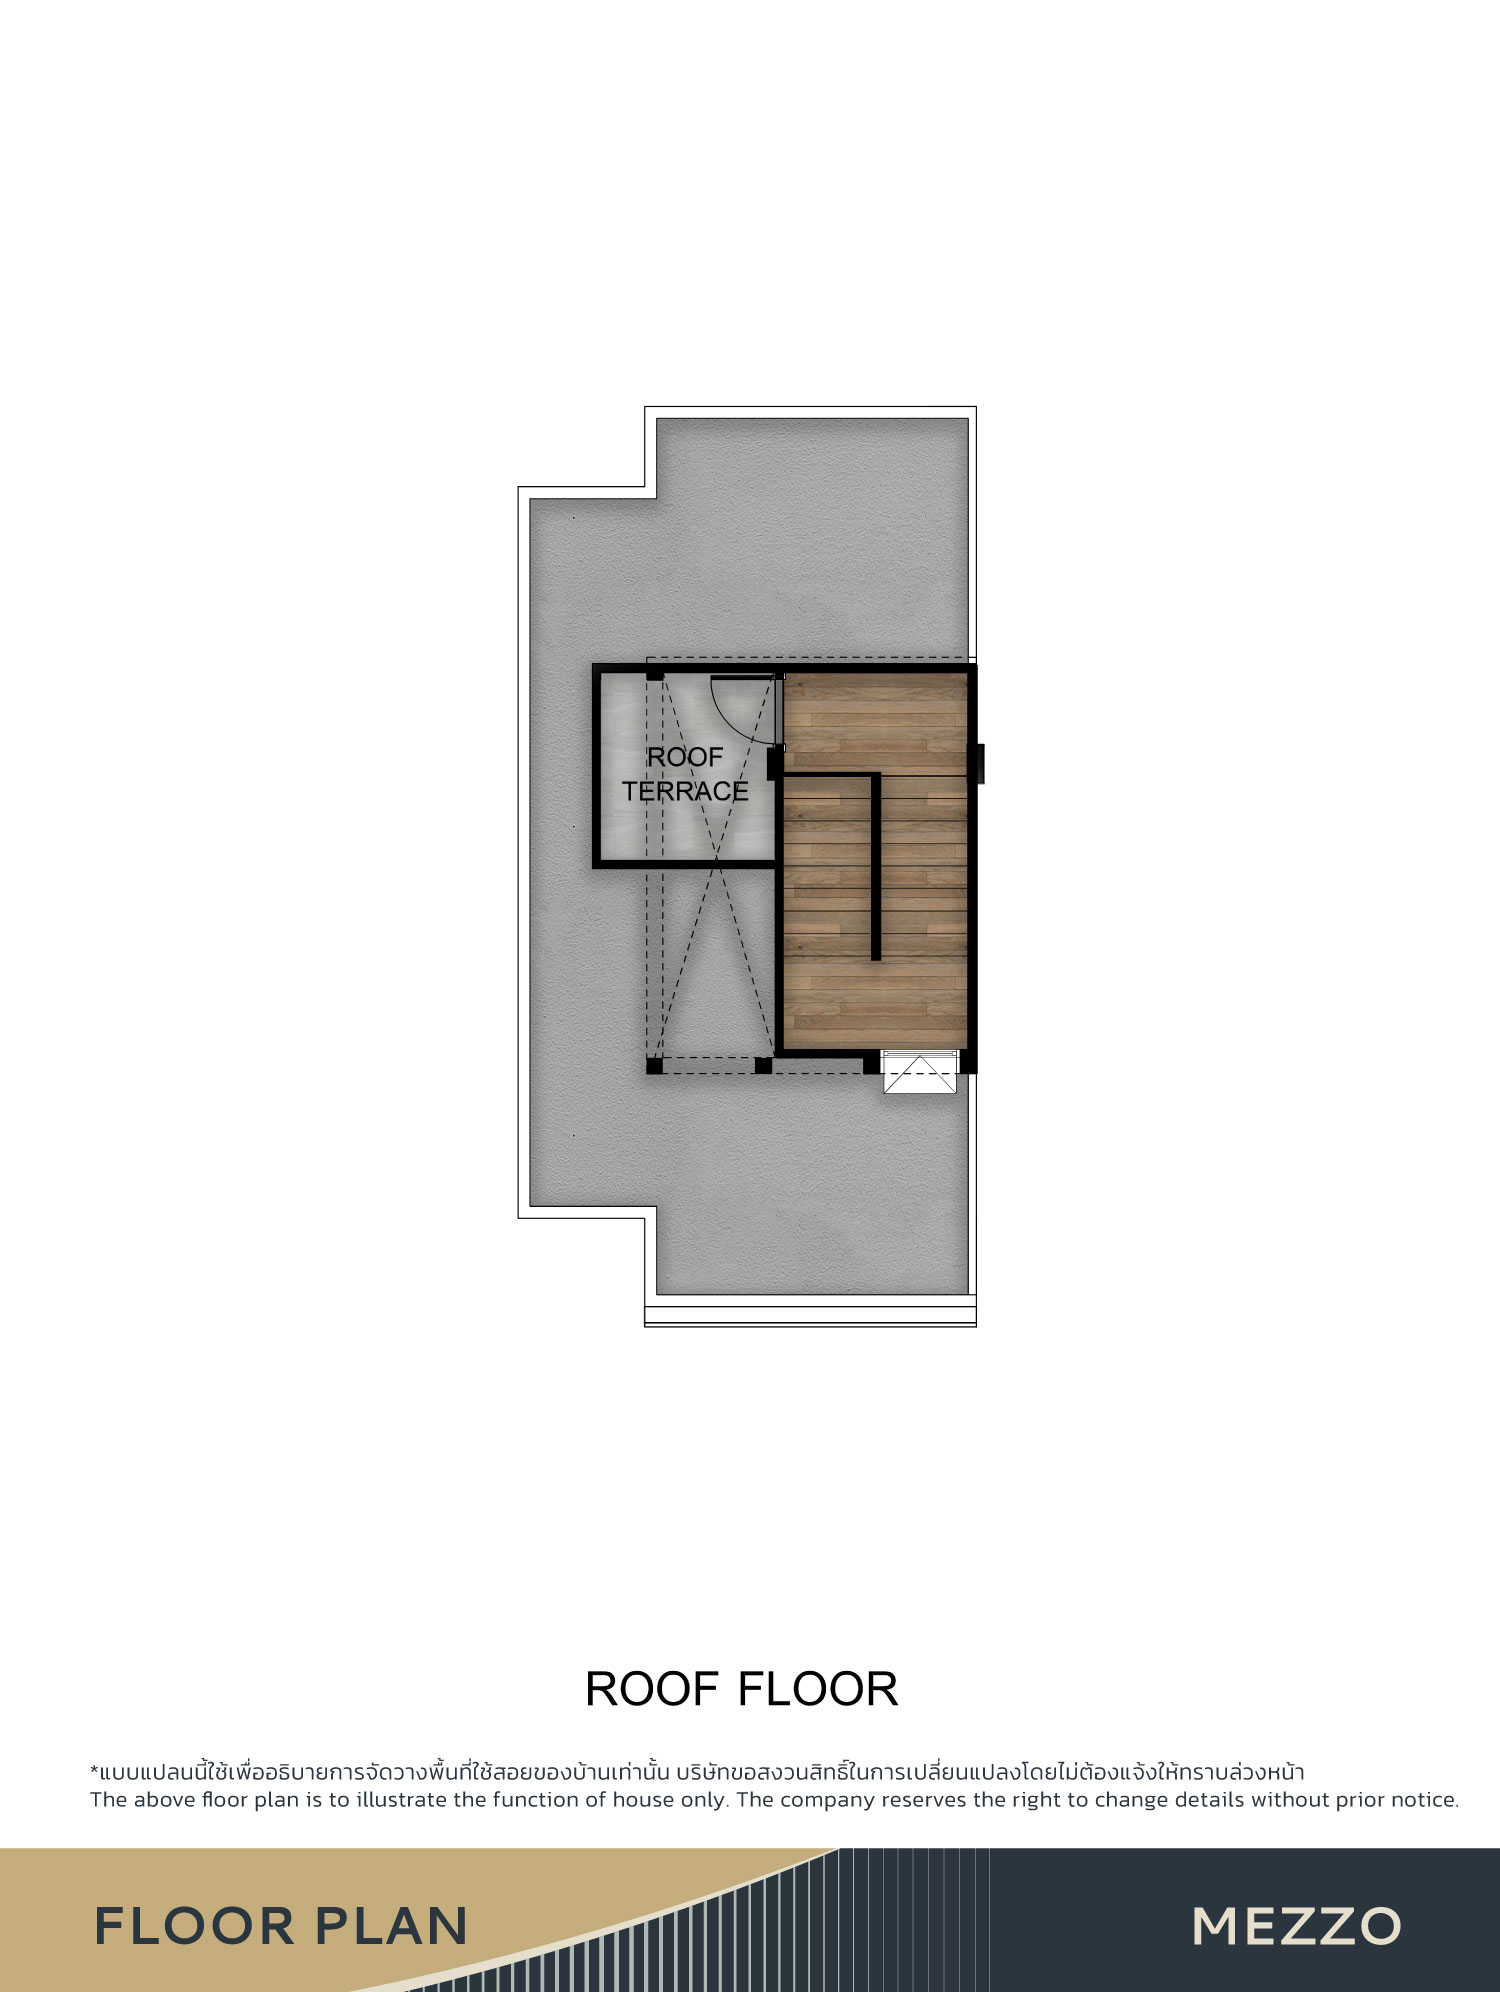 Roof floor